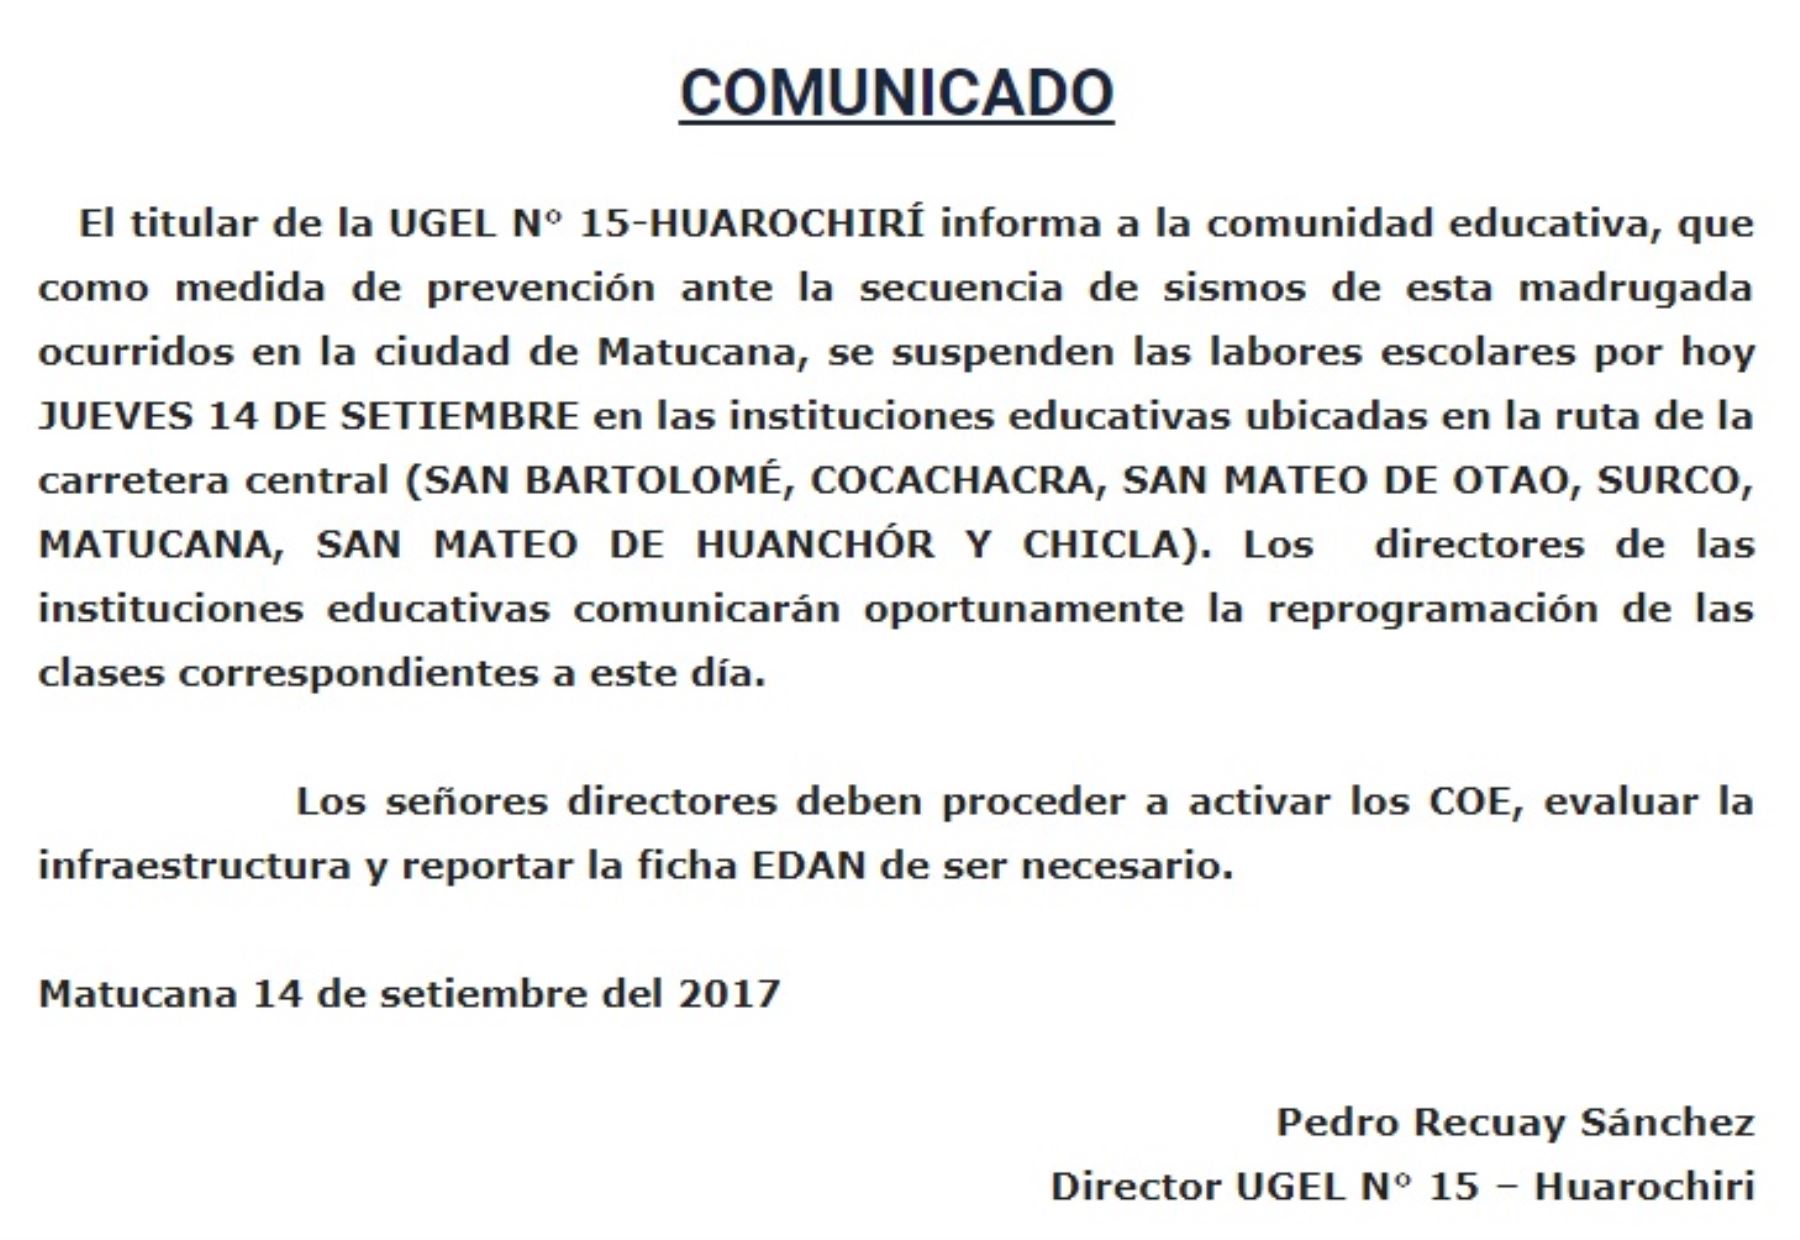 Comunicado de la UGEL 15 sobre suspensión de clases escolares en distritos de Huarochirí por prevención ante la ocurrencia de sismos.